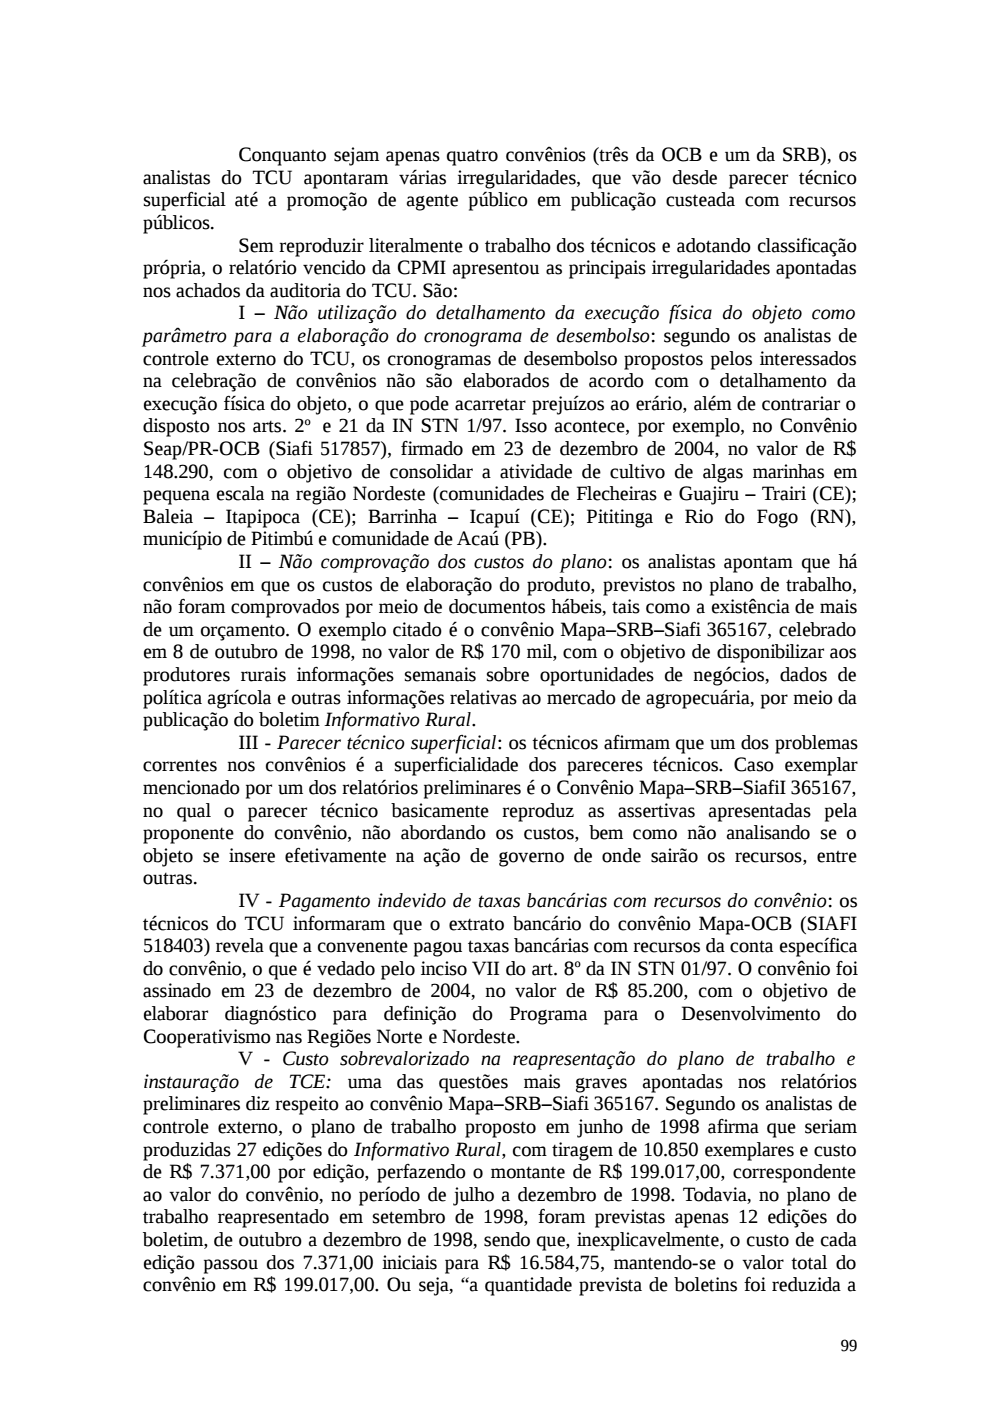 Page 99 from Relatório final da comissão